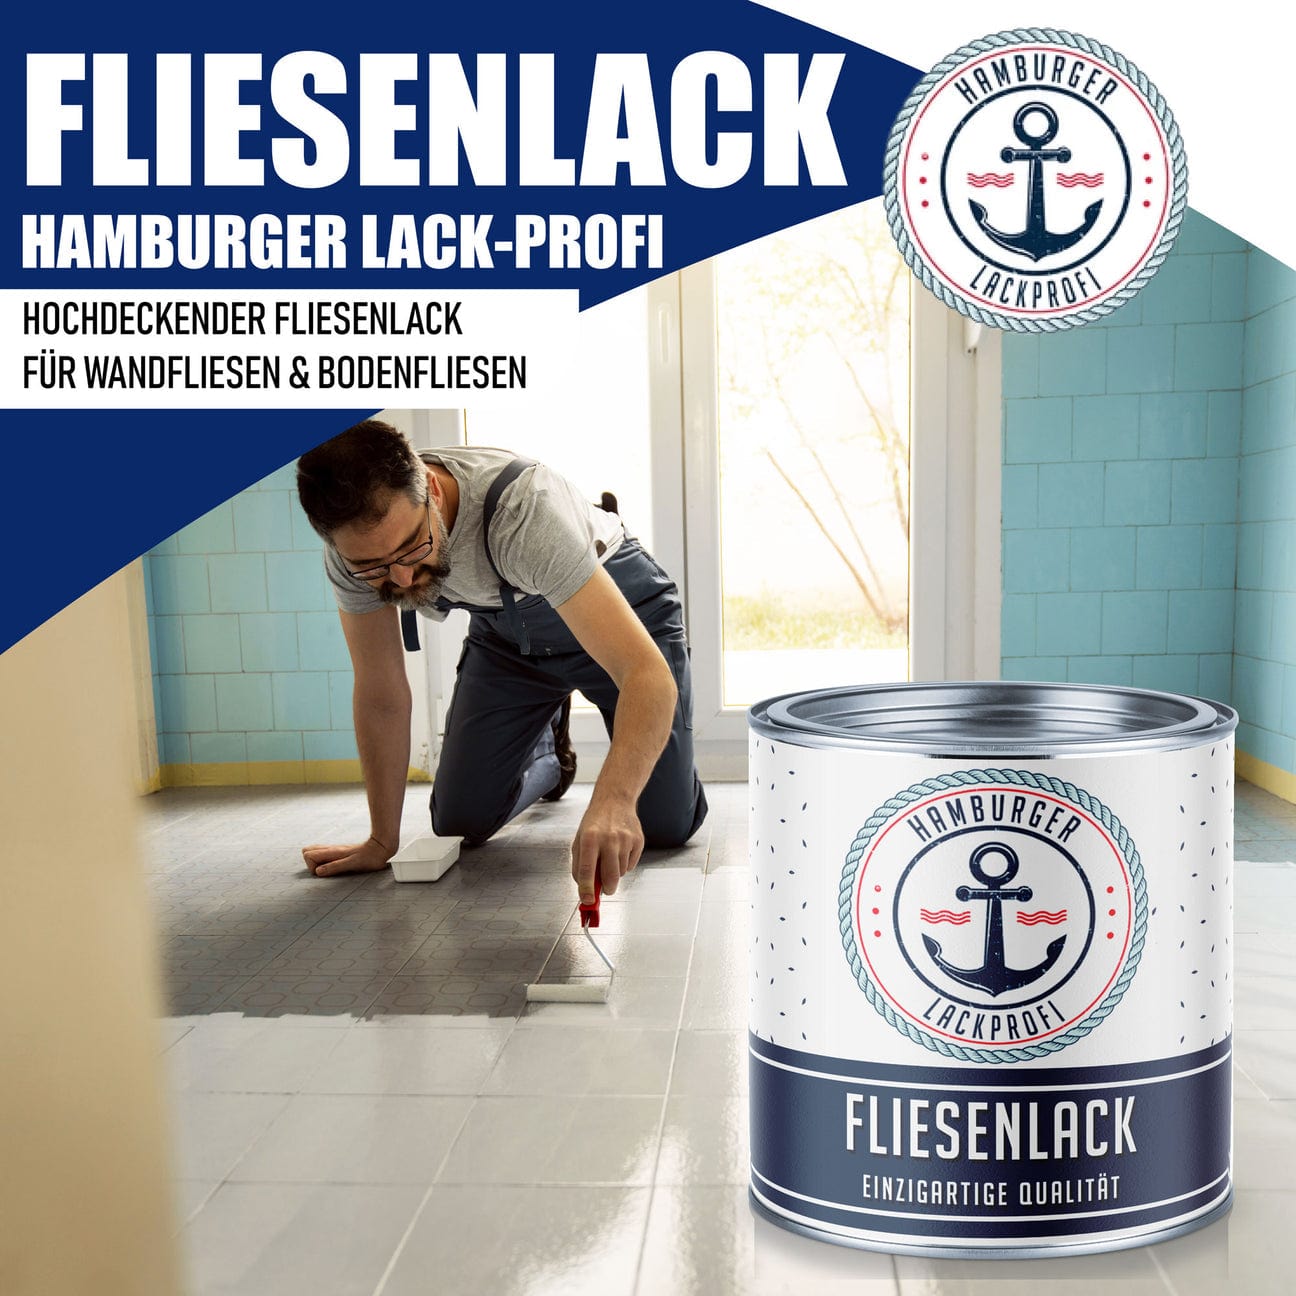 Hamburger Lack-Profi Hamburger Lack-Profi Fliesenlack Blassgrün RAL 6021- hochdeckende Fliesenfarbe Grün